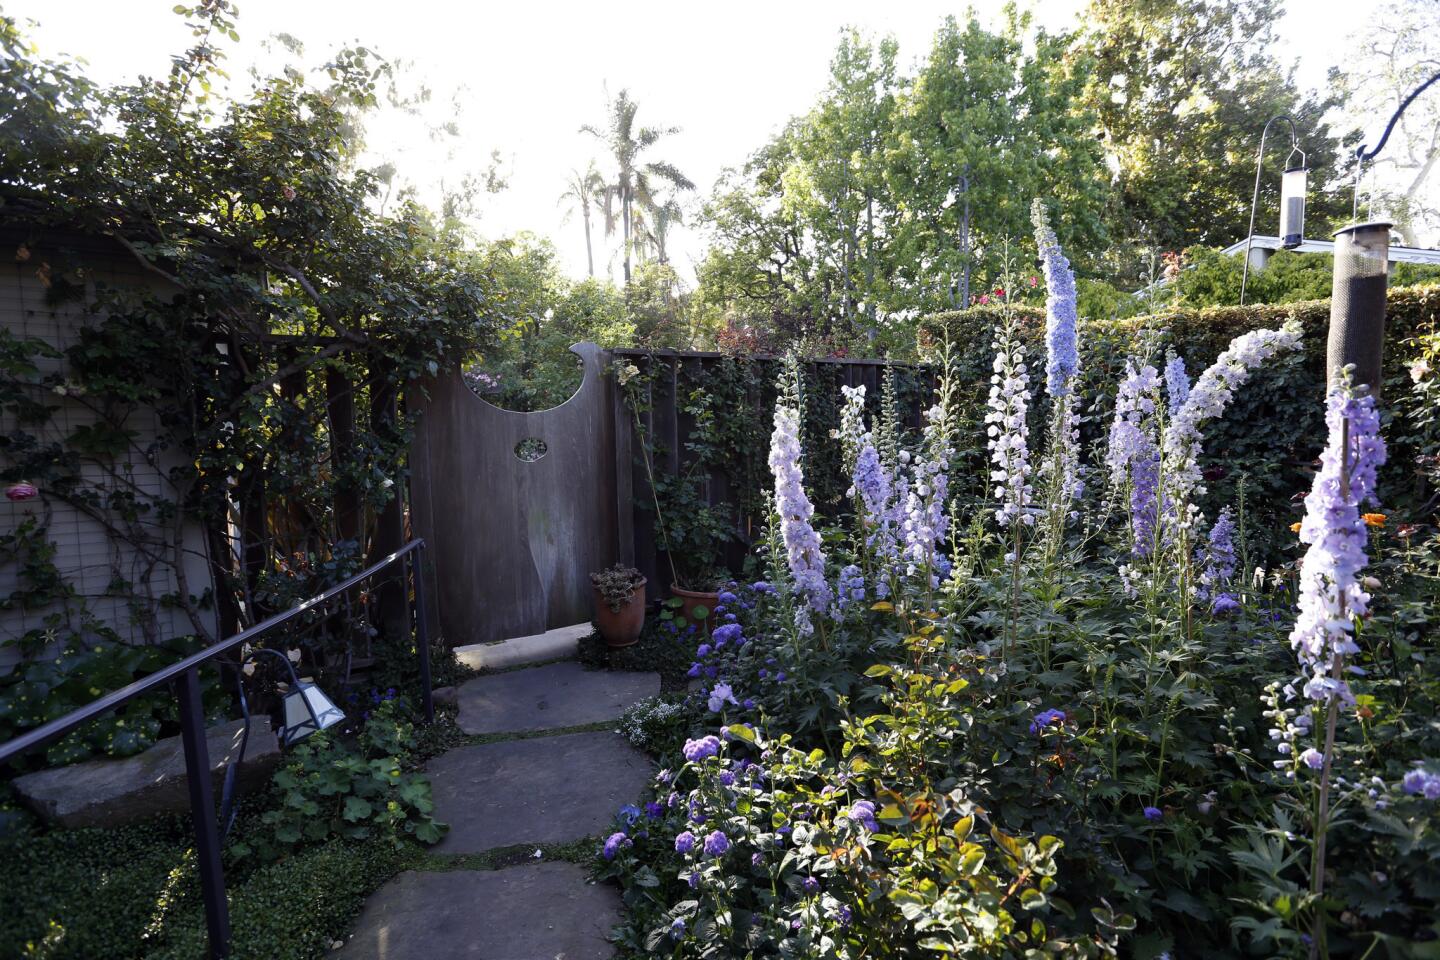 Julie Newmar's Brentwood garden